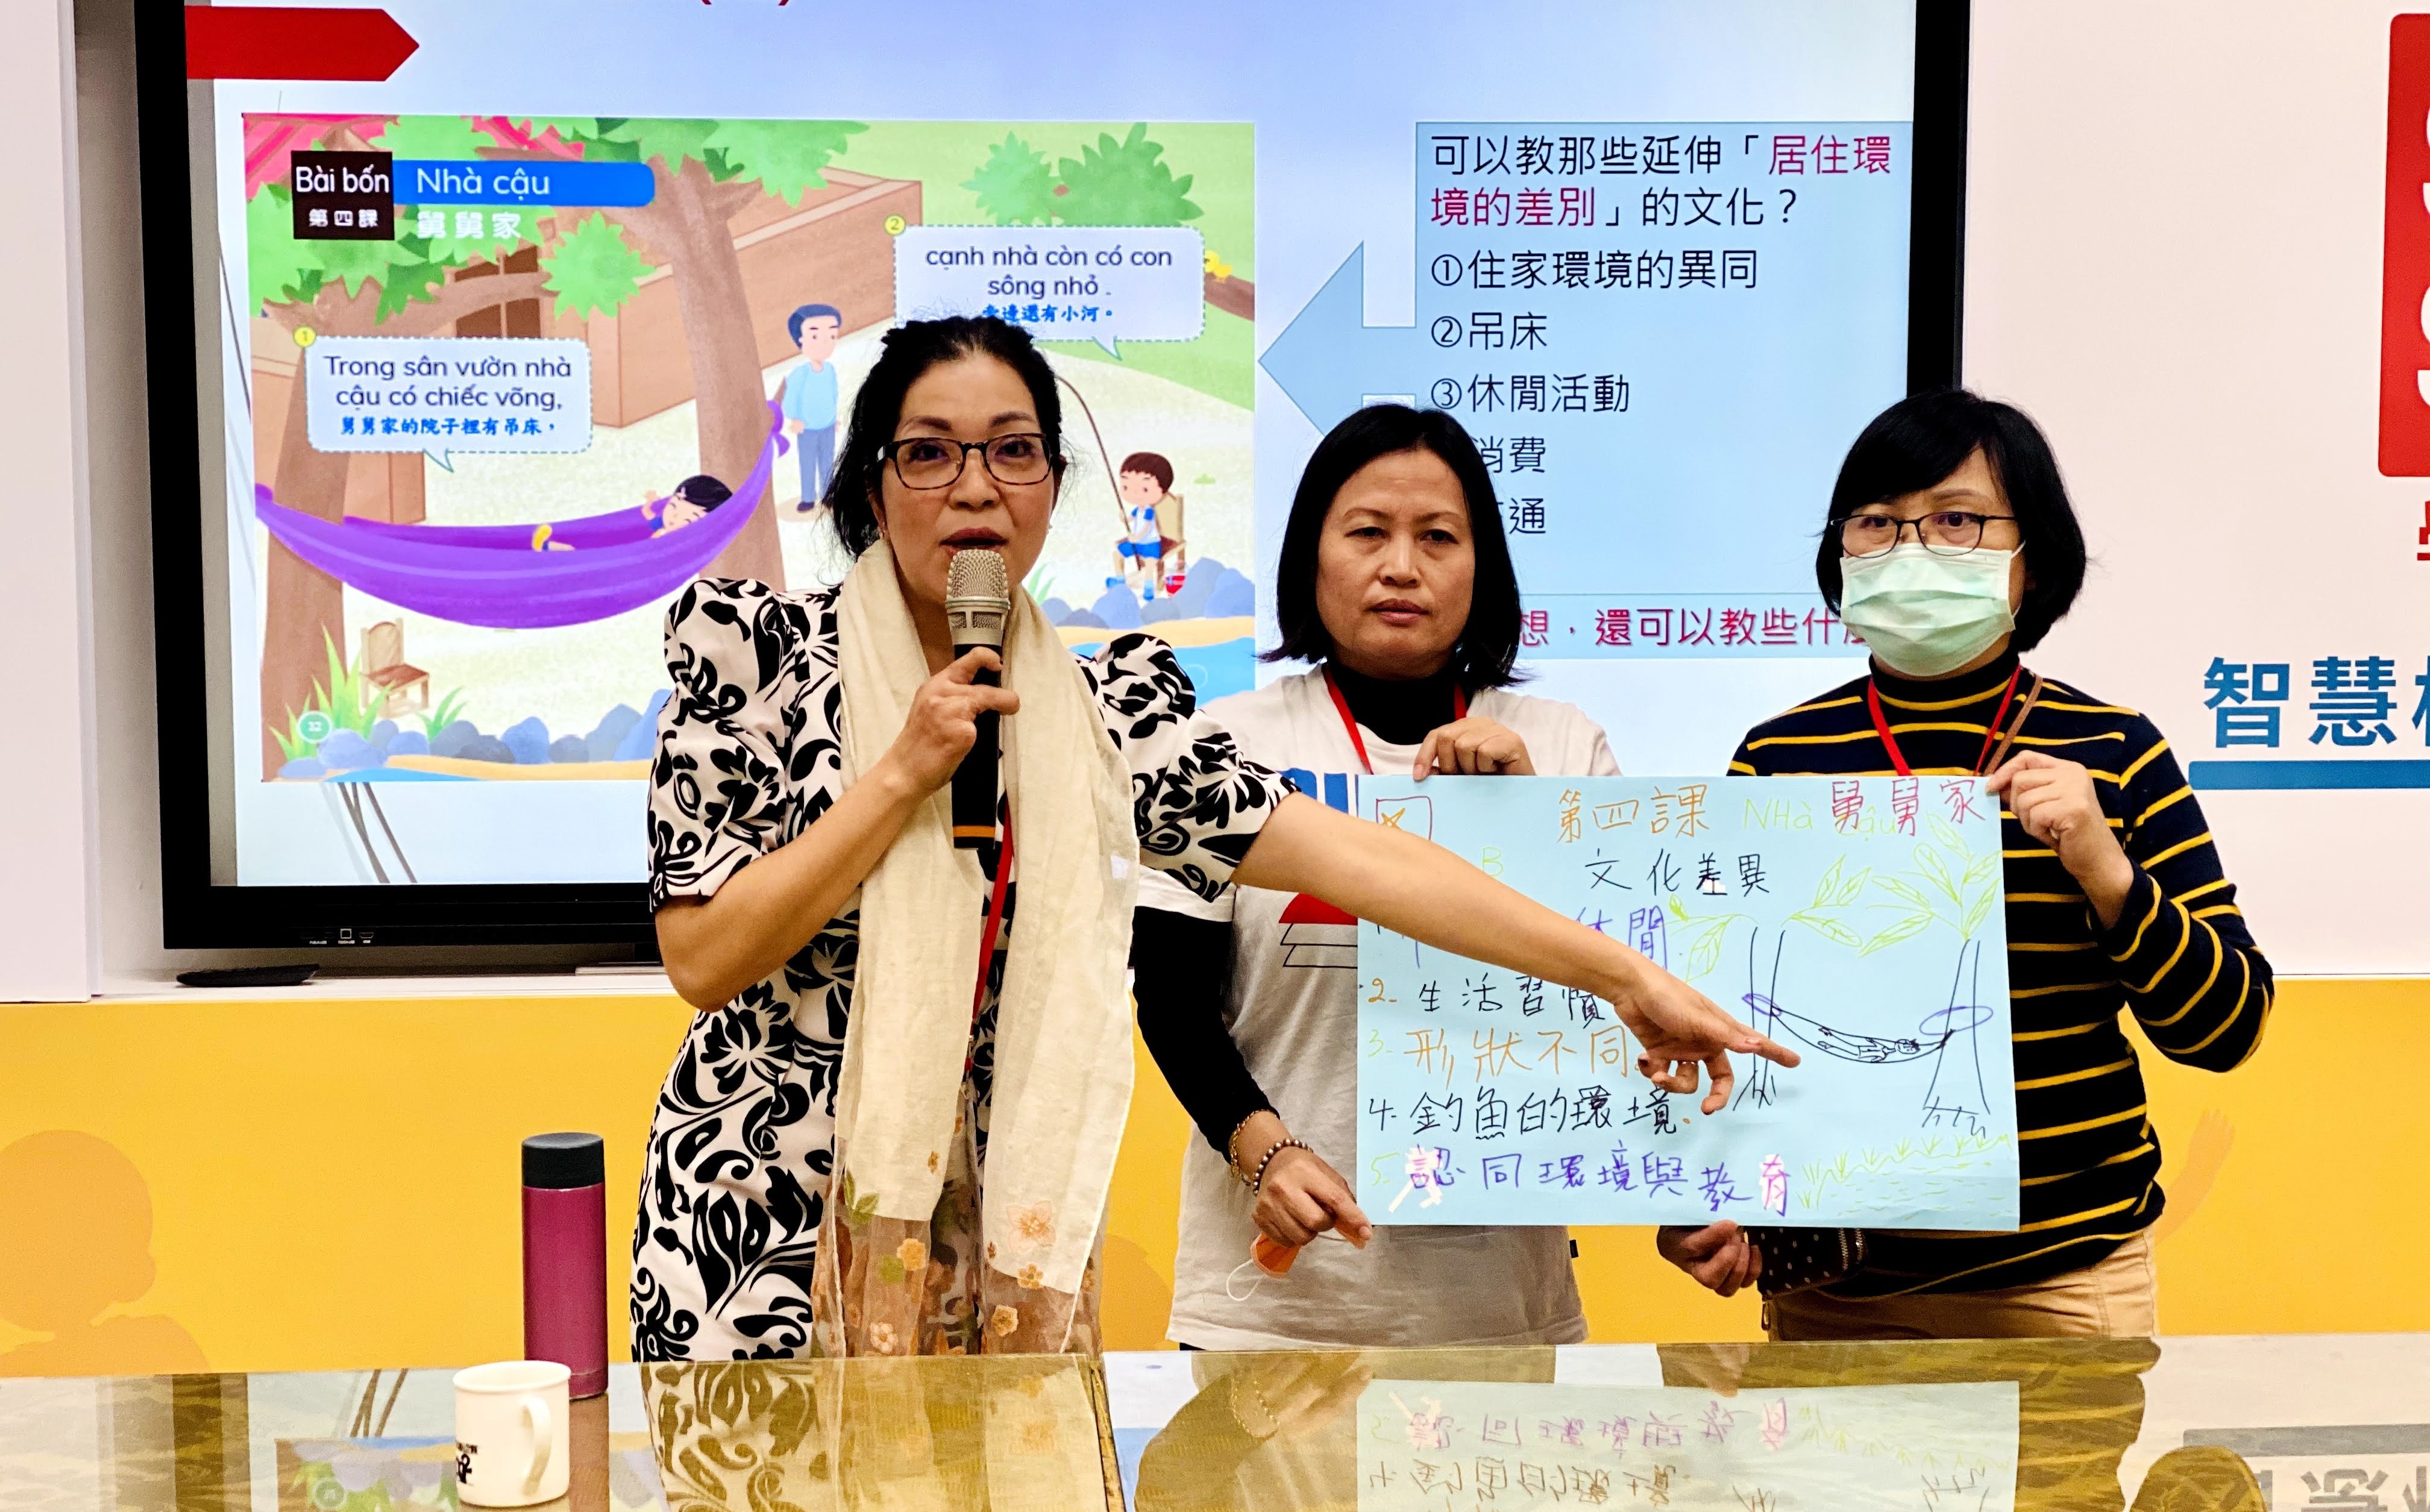 Pemerintah Kota Taipei Baru meningkatkan keterampilan "Guru Bahasa Penduduk Baru". Sumber: Diambil dari Balai Kota New Taipei